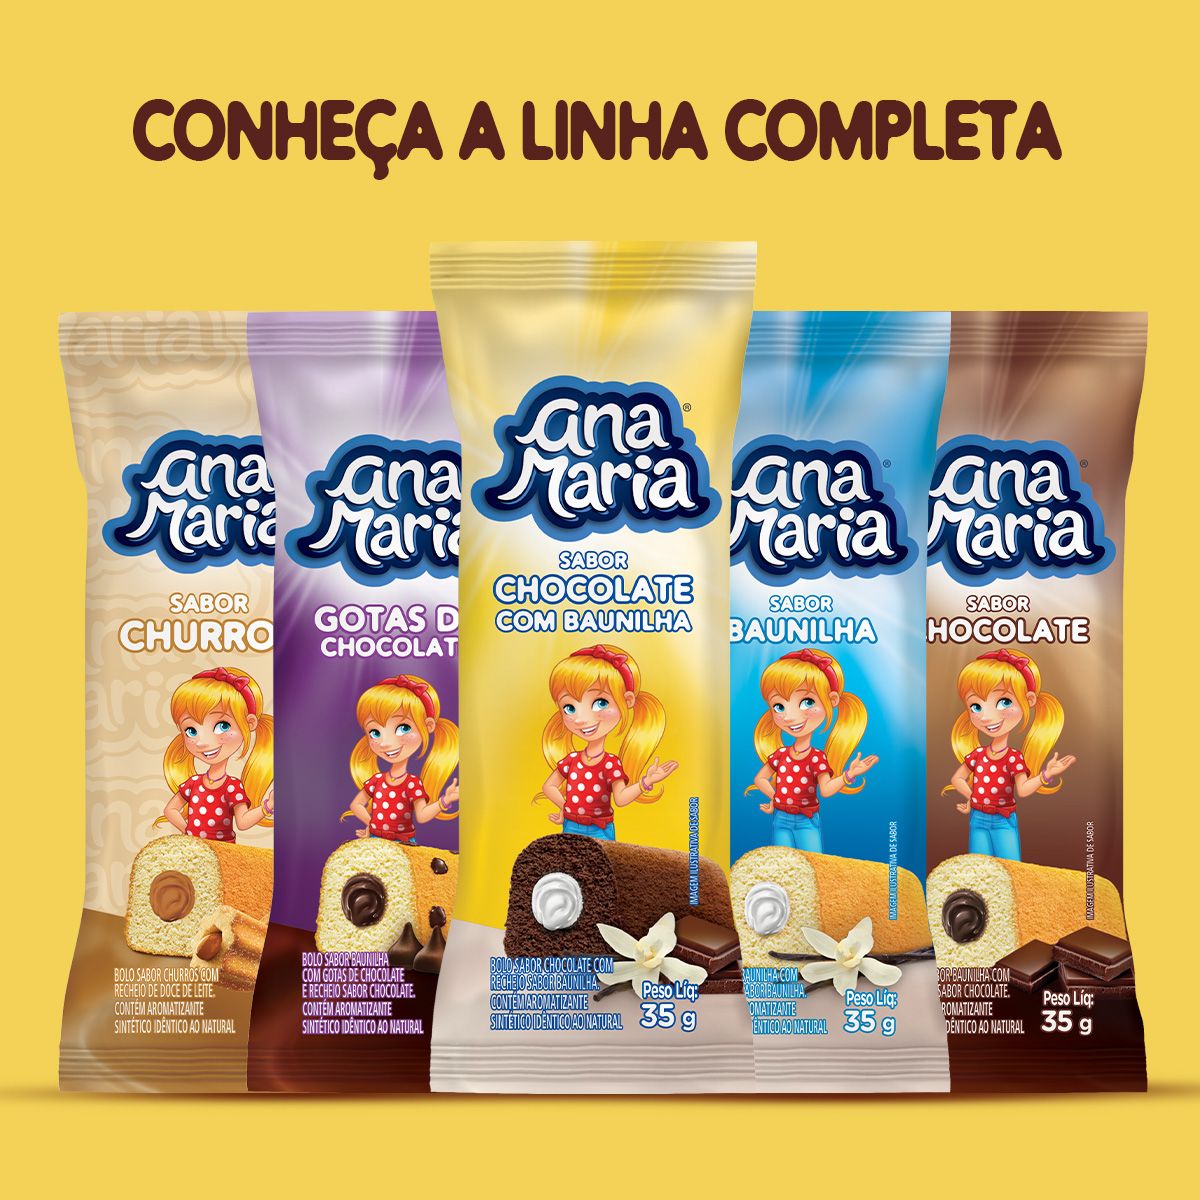 Ana Maria - Embalagem Especial QD+ Duplo Chocolate: bolinho de chocolate  com recheio de chocolate + farinha de aveia <3